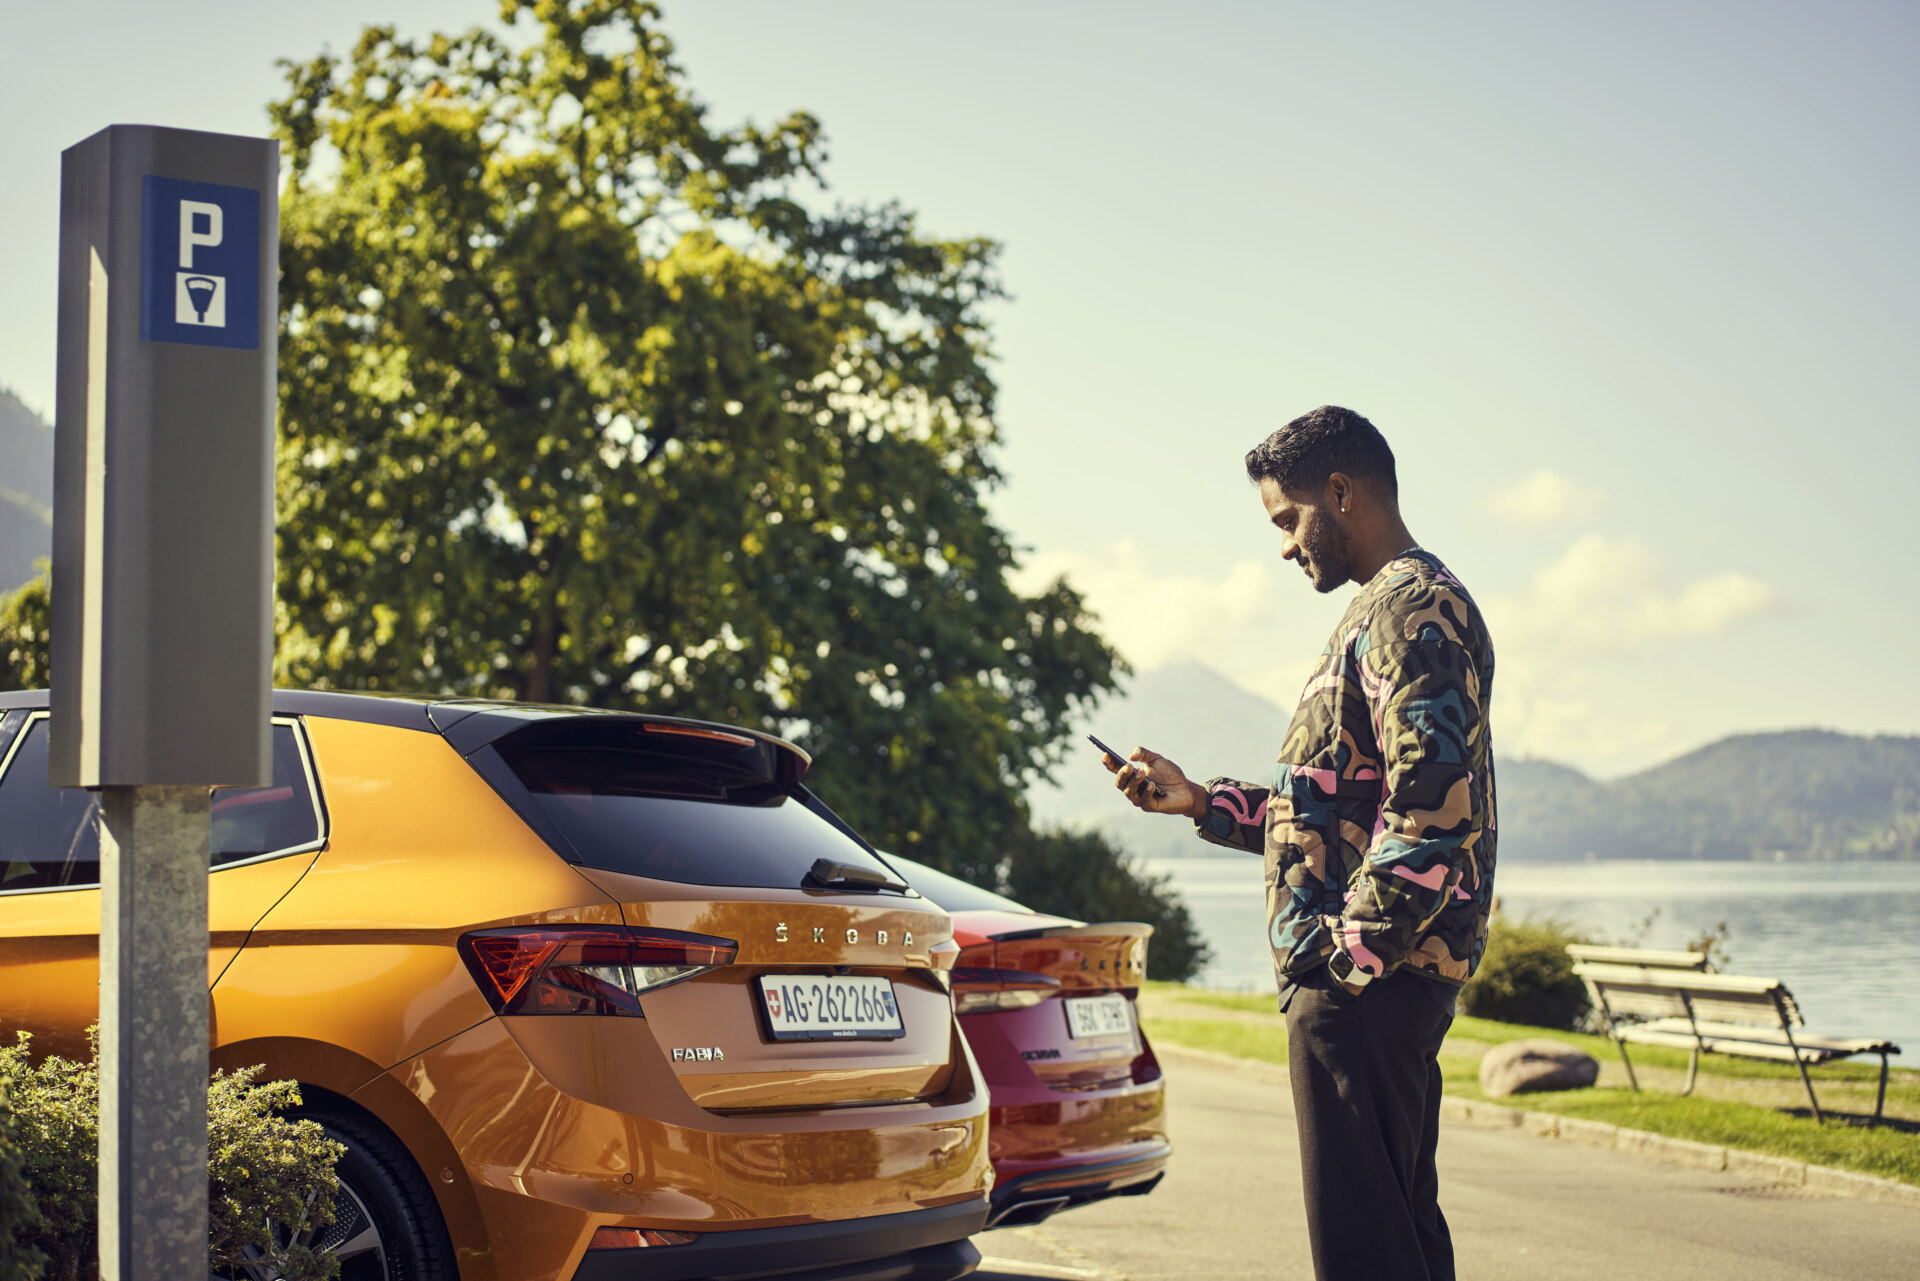 Nuovi servizi digitali e pagamento semplificato del parcheggio. Škoda Auto DigiLab è diventato Škoda X